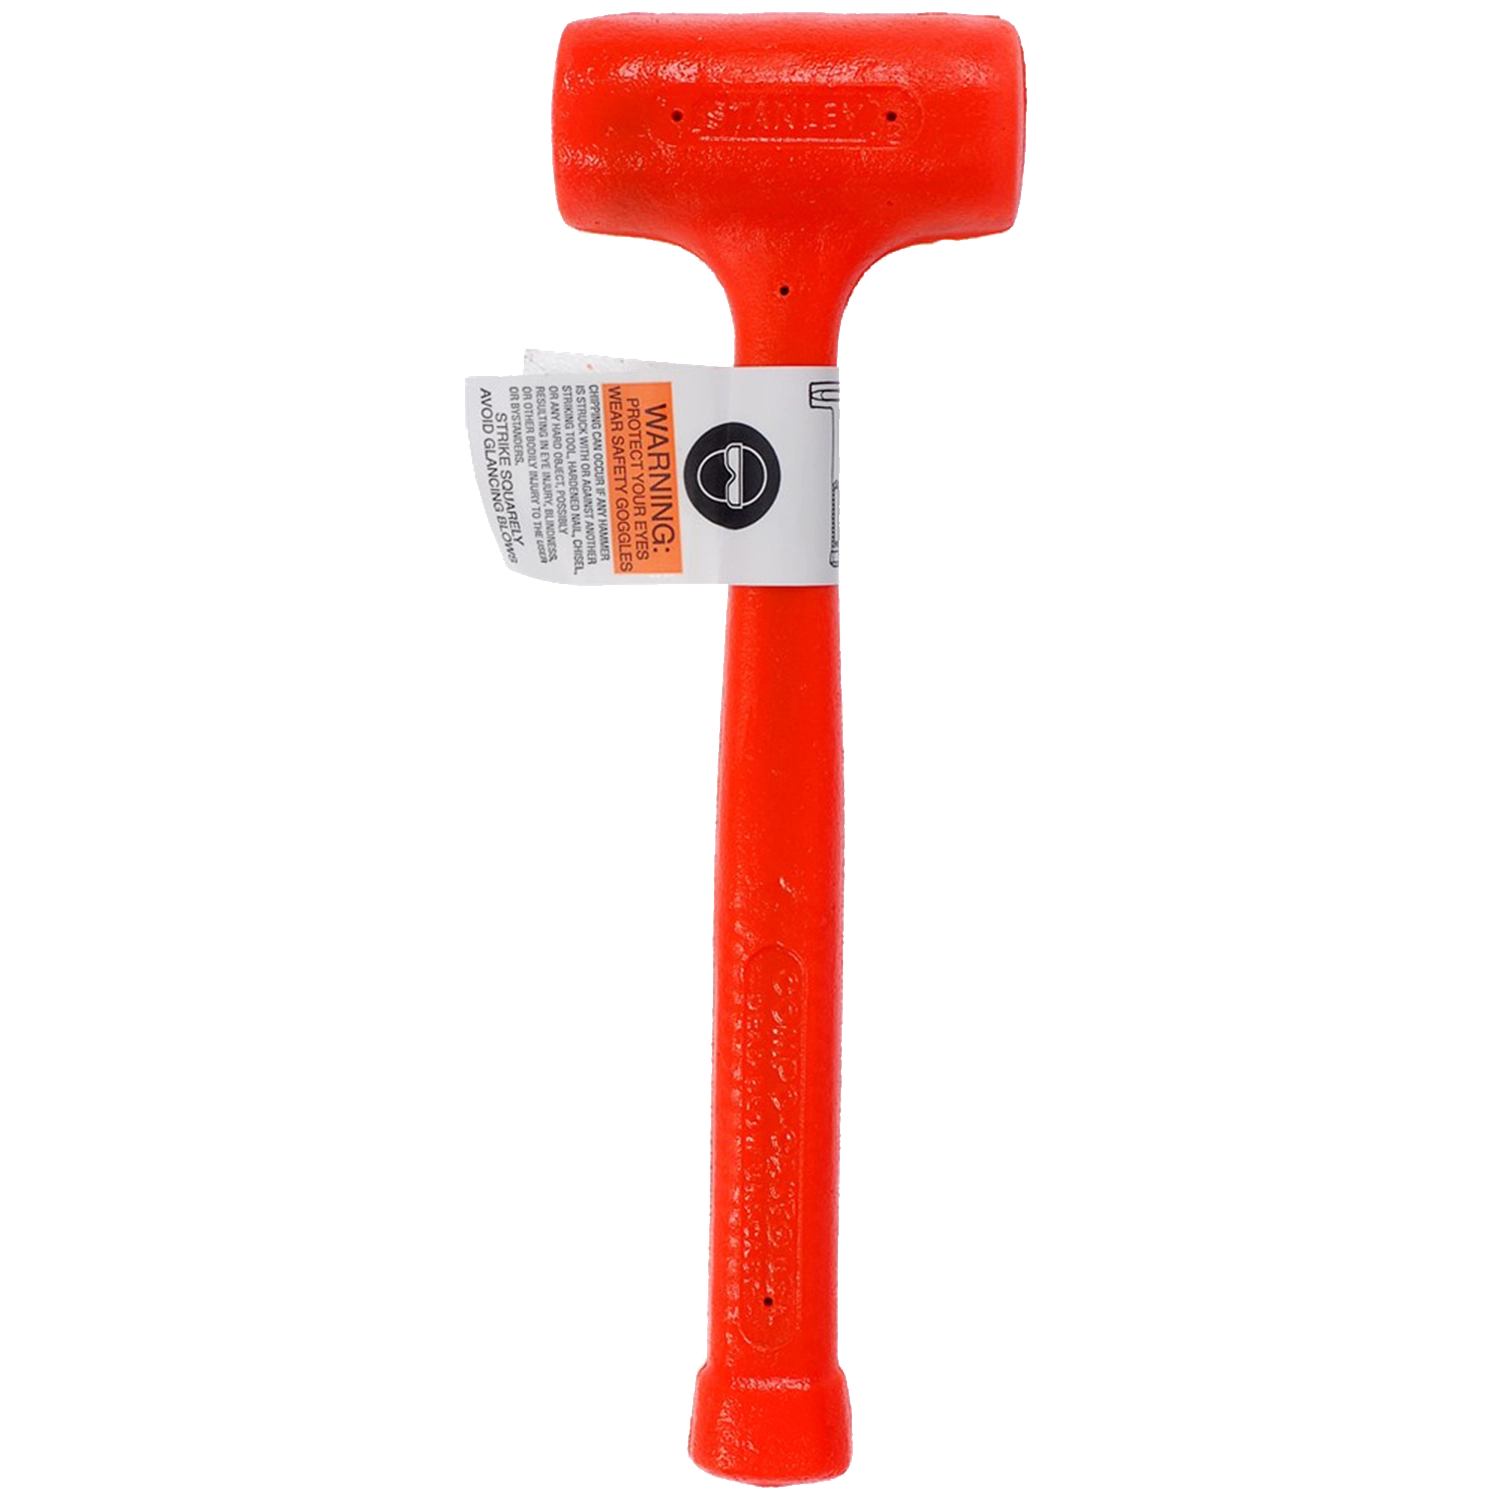 Rode Stanley Compo Cast hamer. Met waarschuwingslabel in papier er aan geplakt.